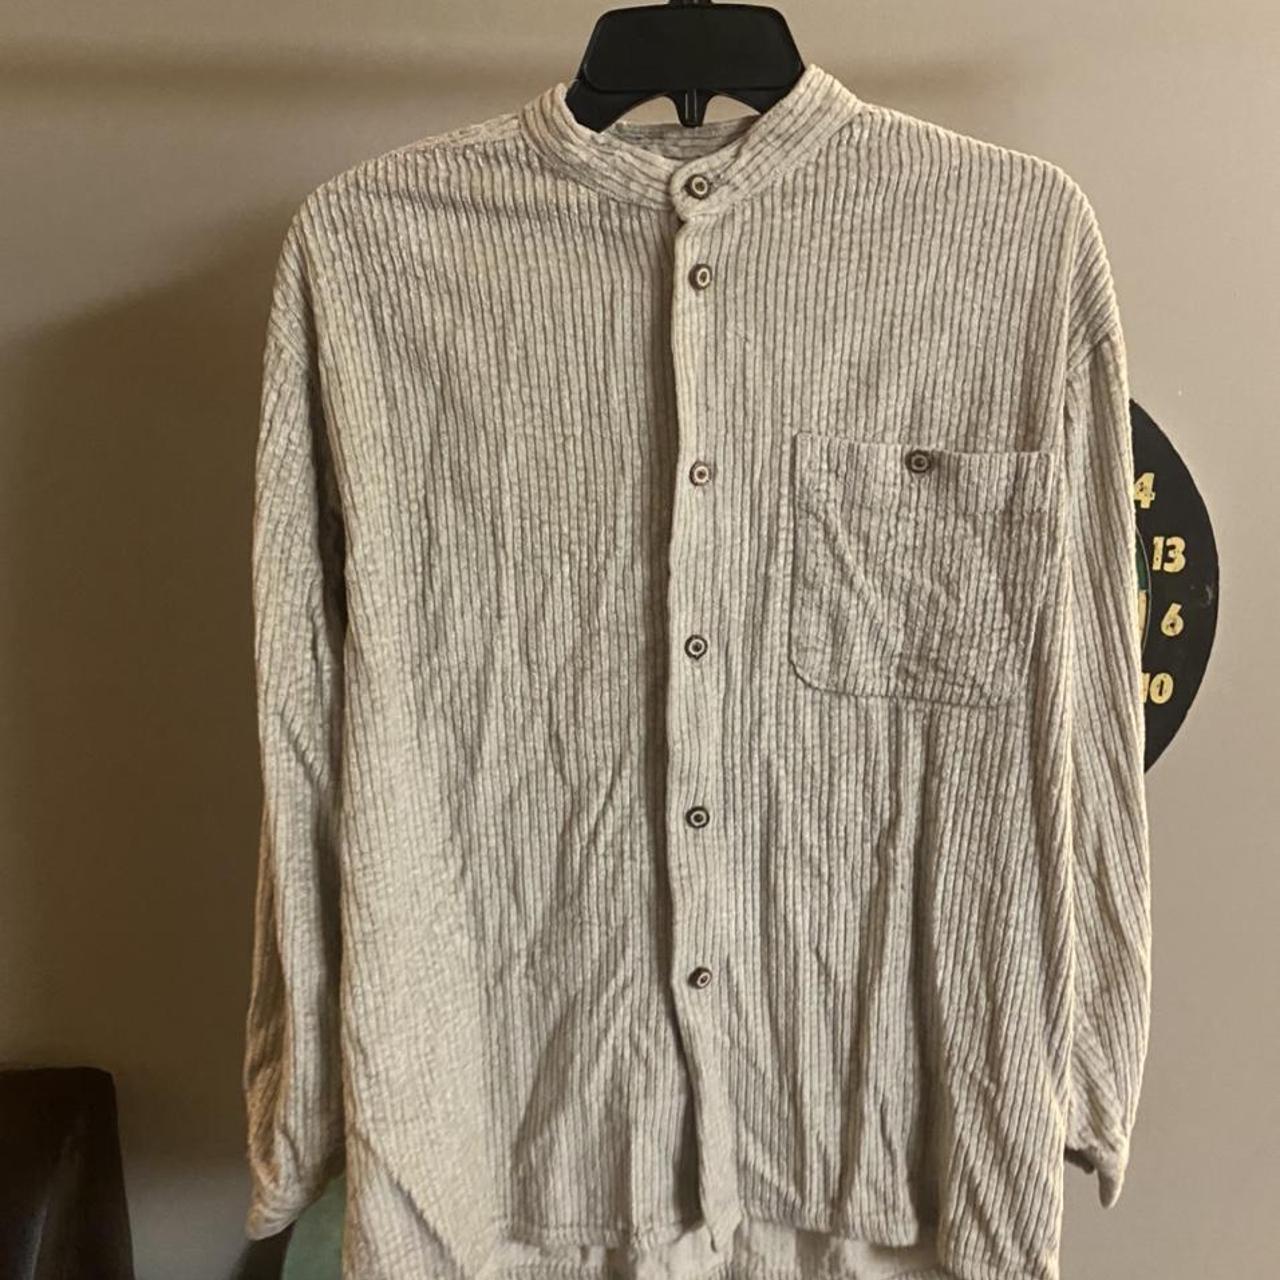 Vintage Corduroy Pronti button up shirt Size M... - Depop